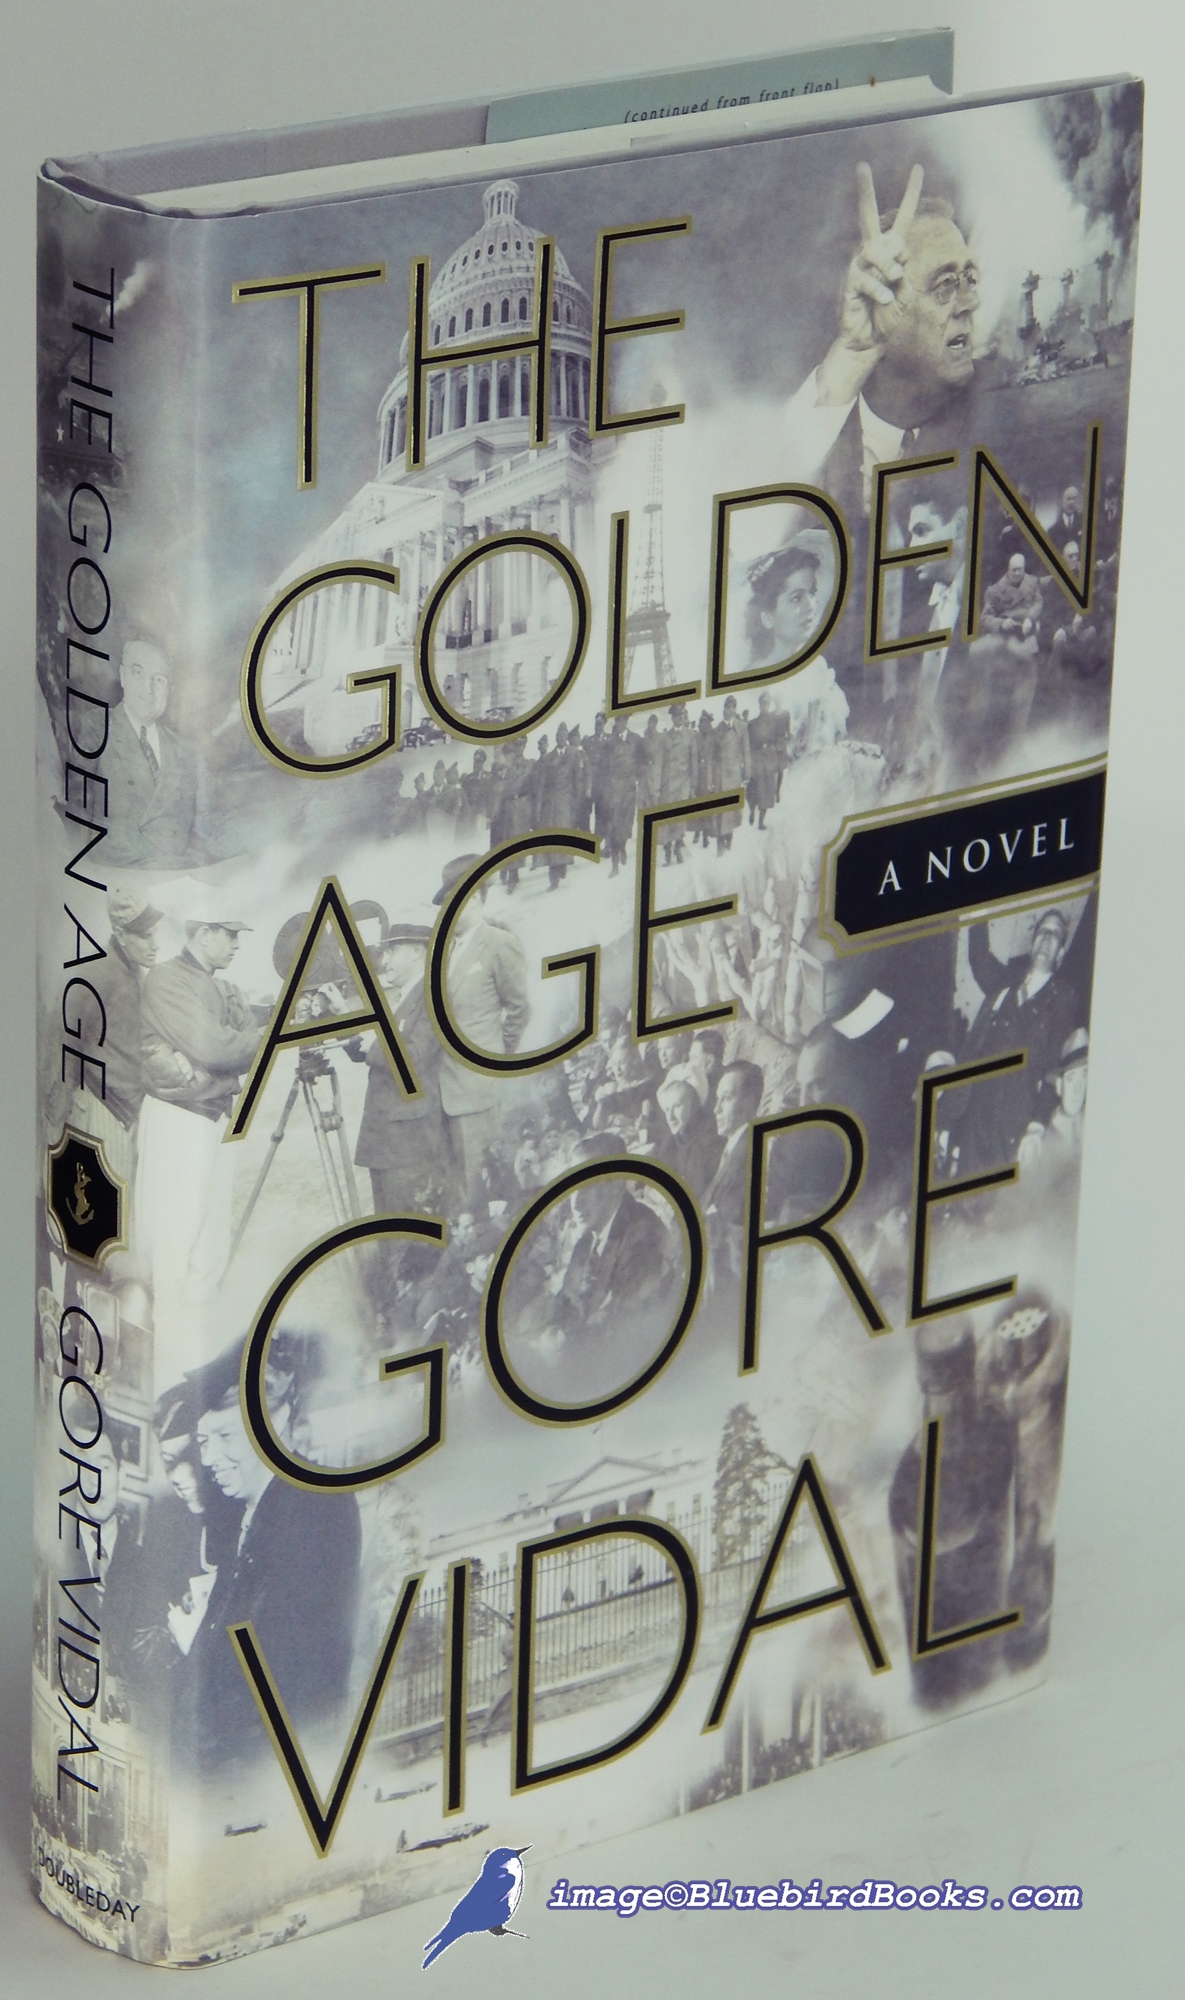 VIDAL, GORE - The Golden Age: A Novel